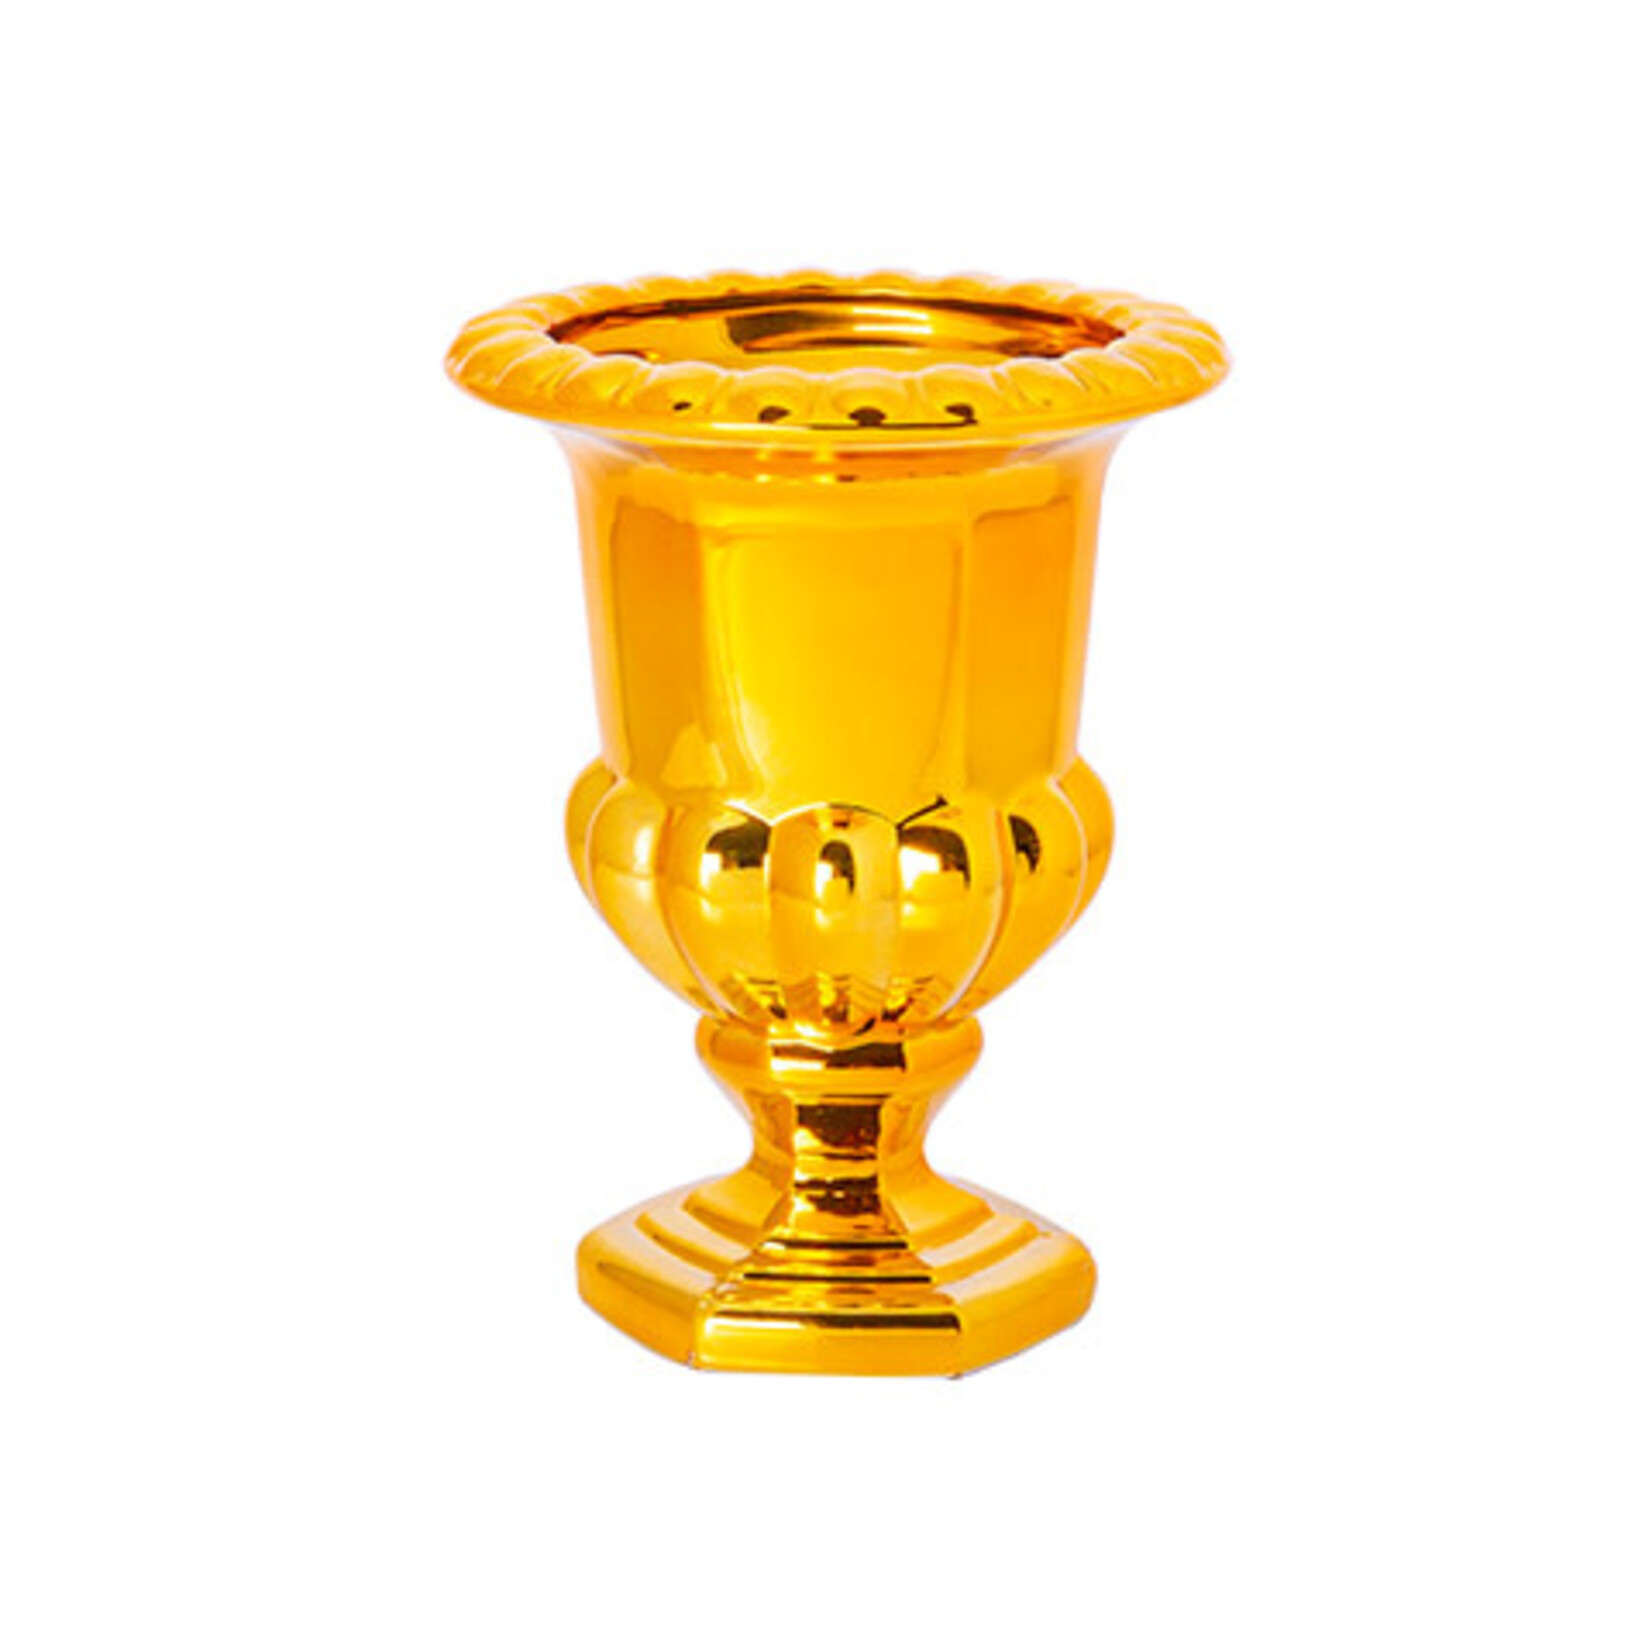 8”H X 6” GOLD THICK GLASS PEDESTAL